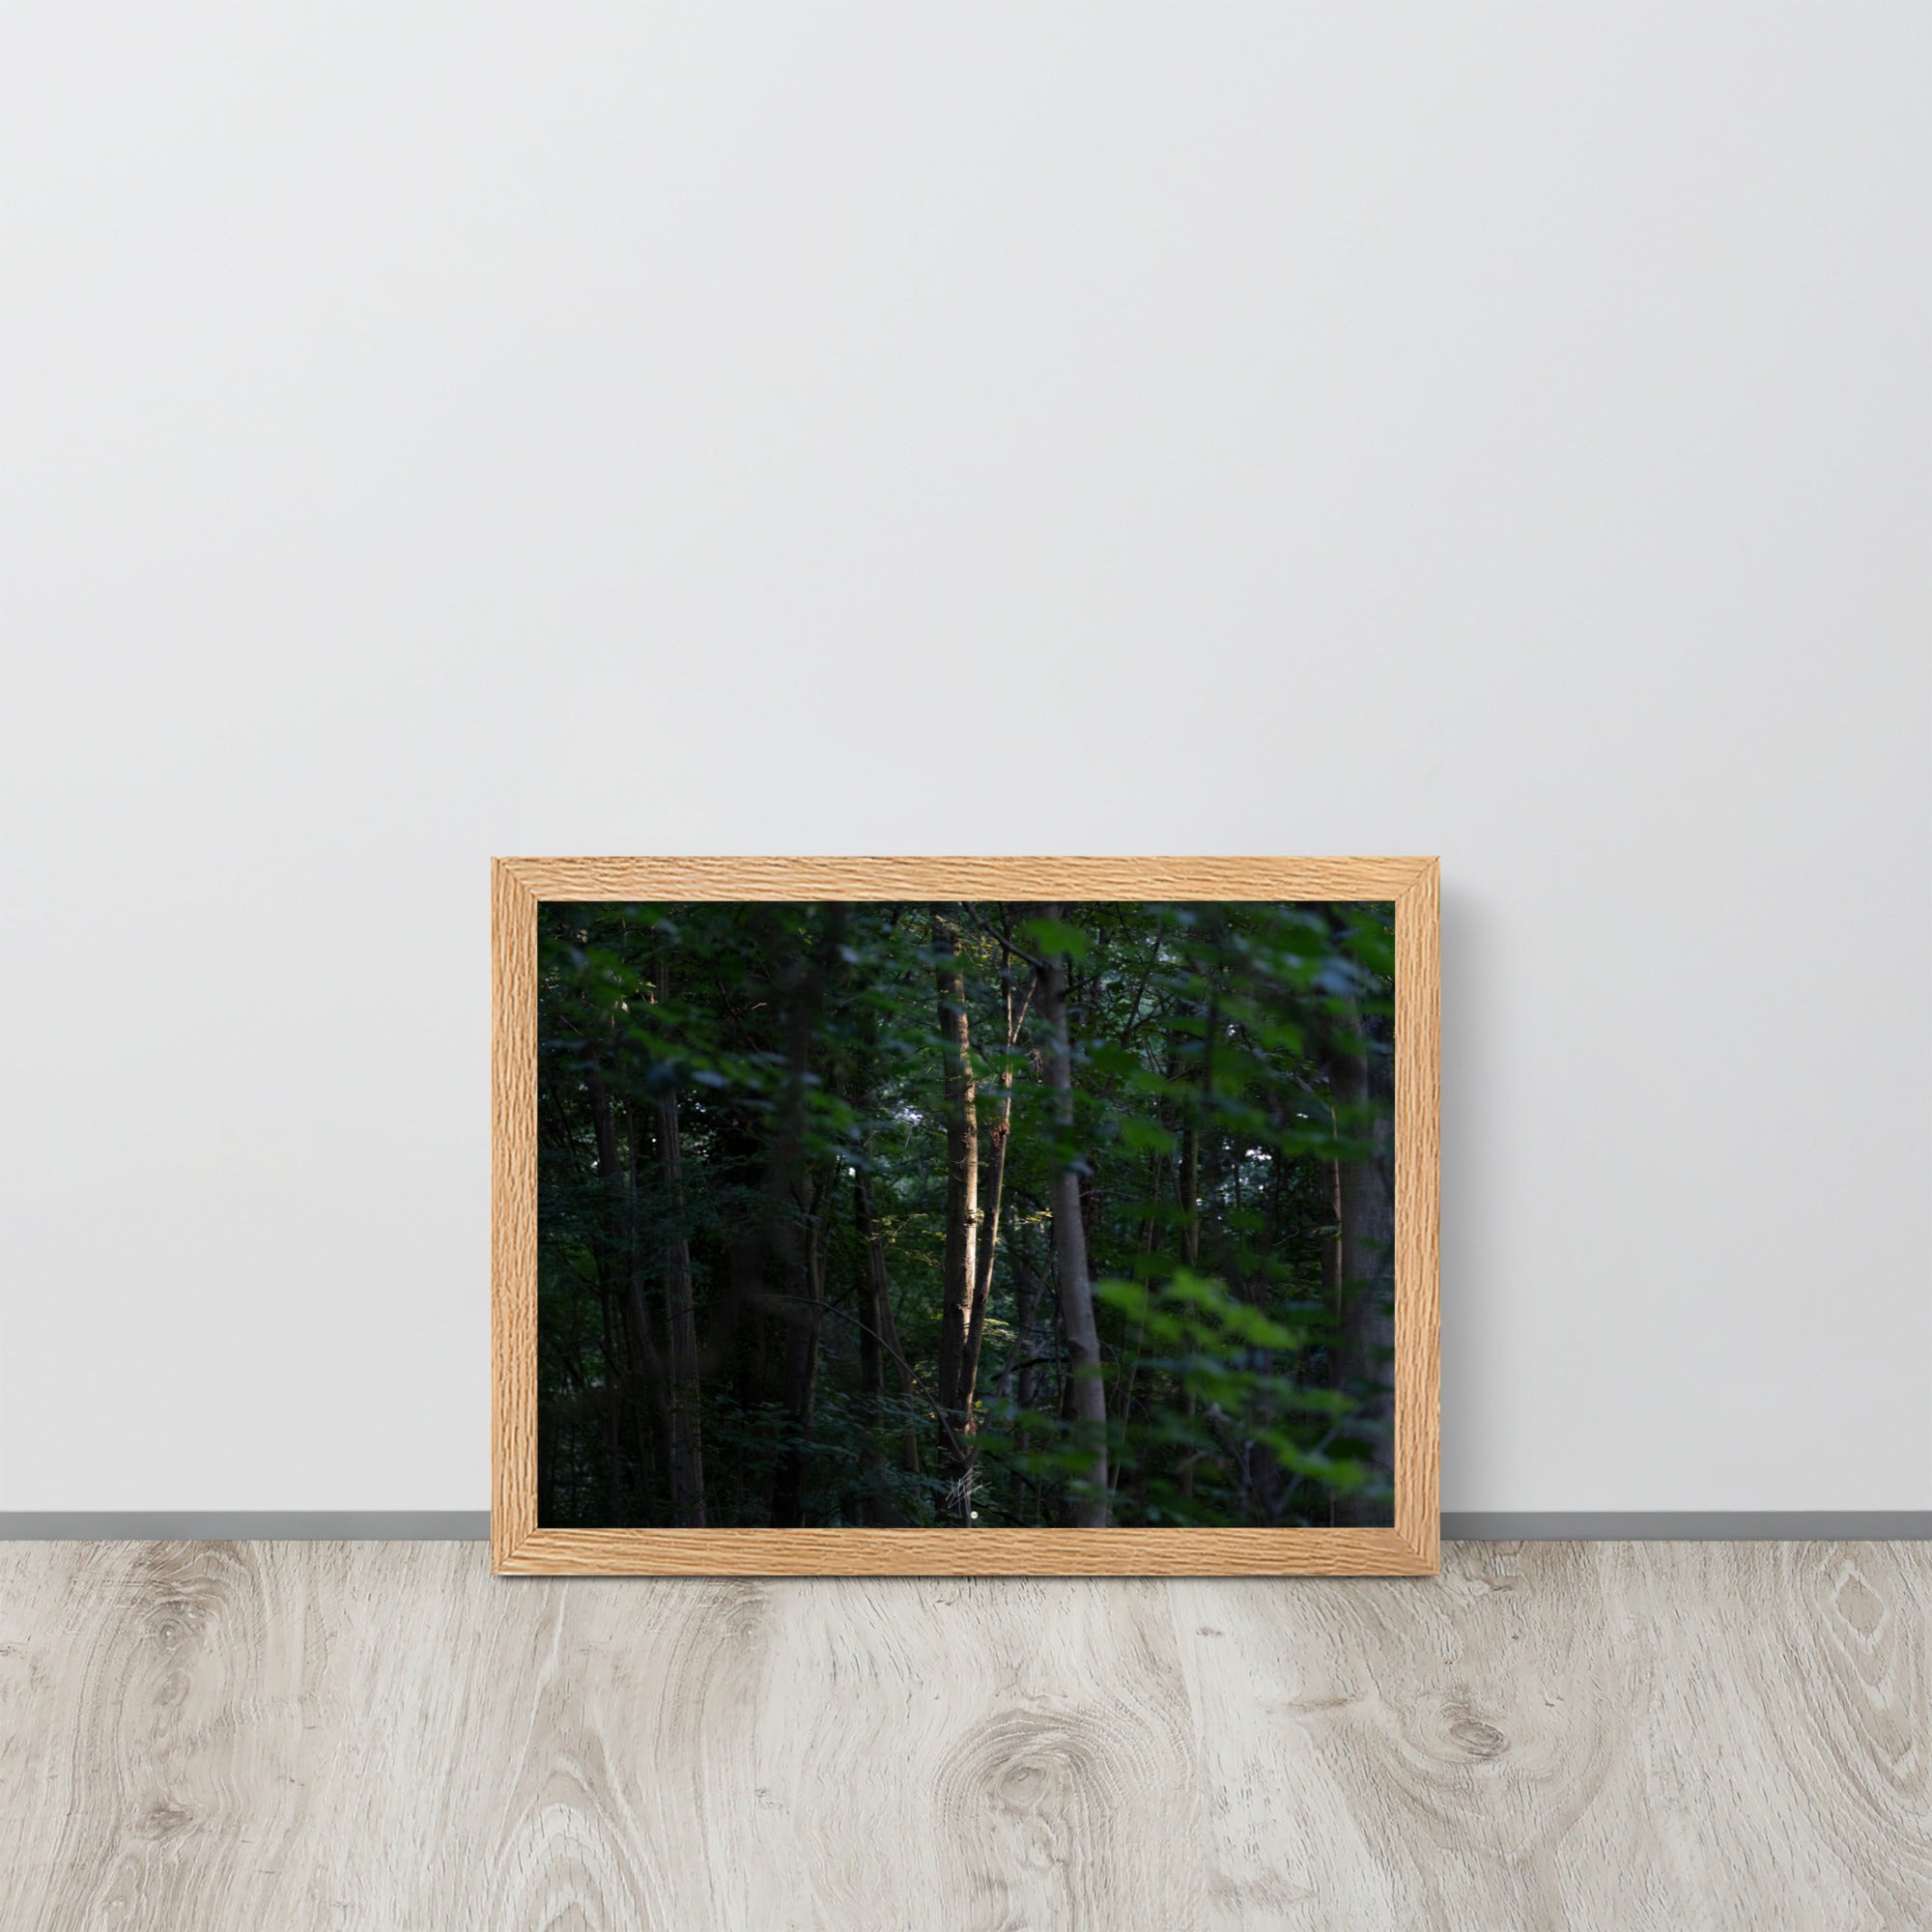 Photographie forestière mettant en évidence un arbre majestueux baigné de lumière, entouré d'une forêt ombragée, illustrant le contraste entre lumière et ombre.